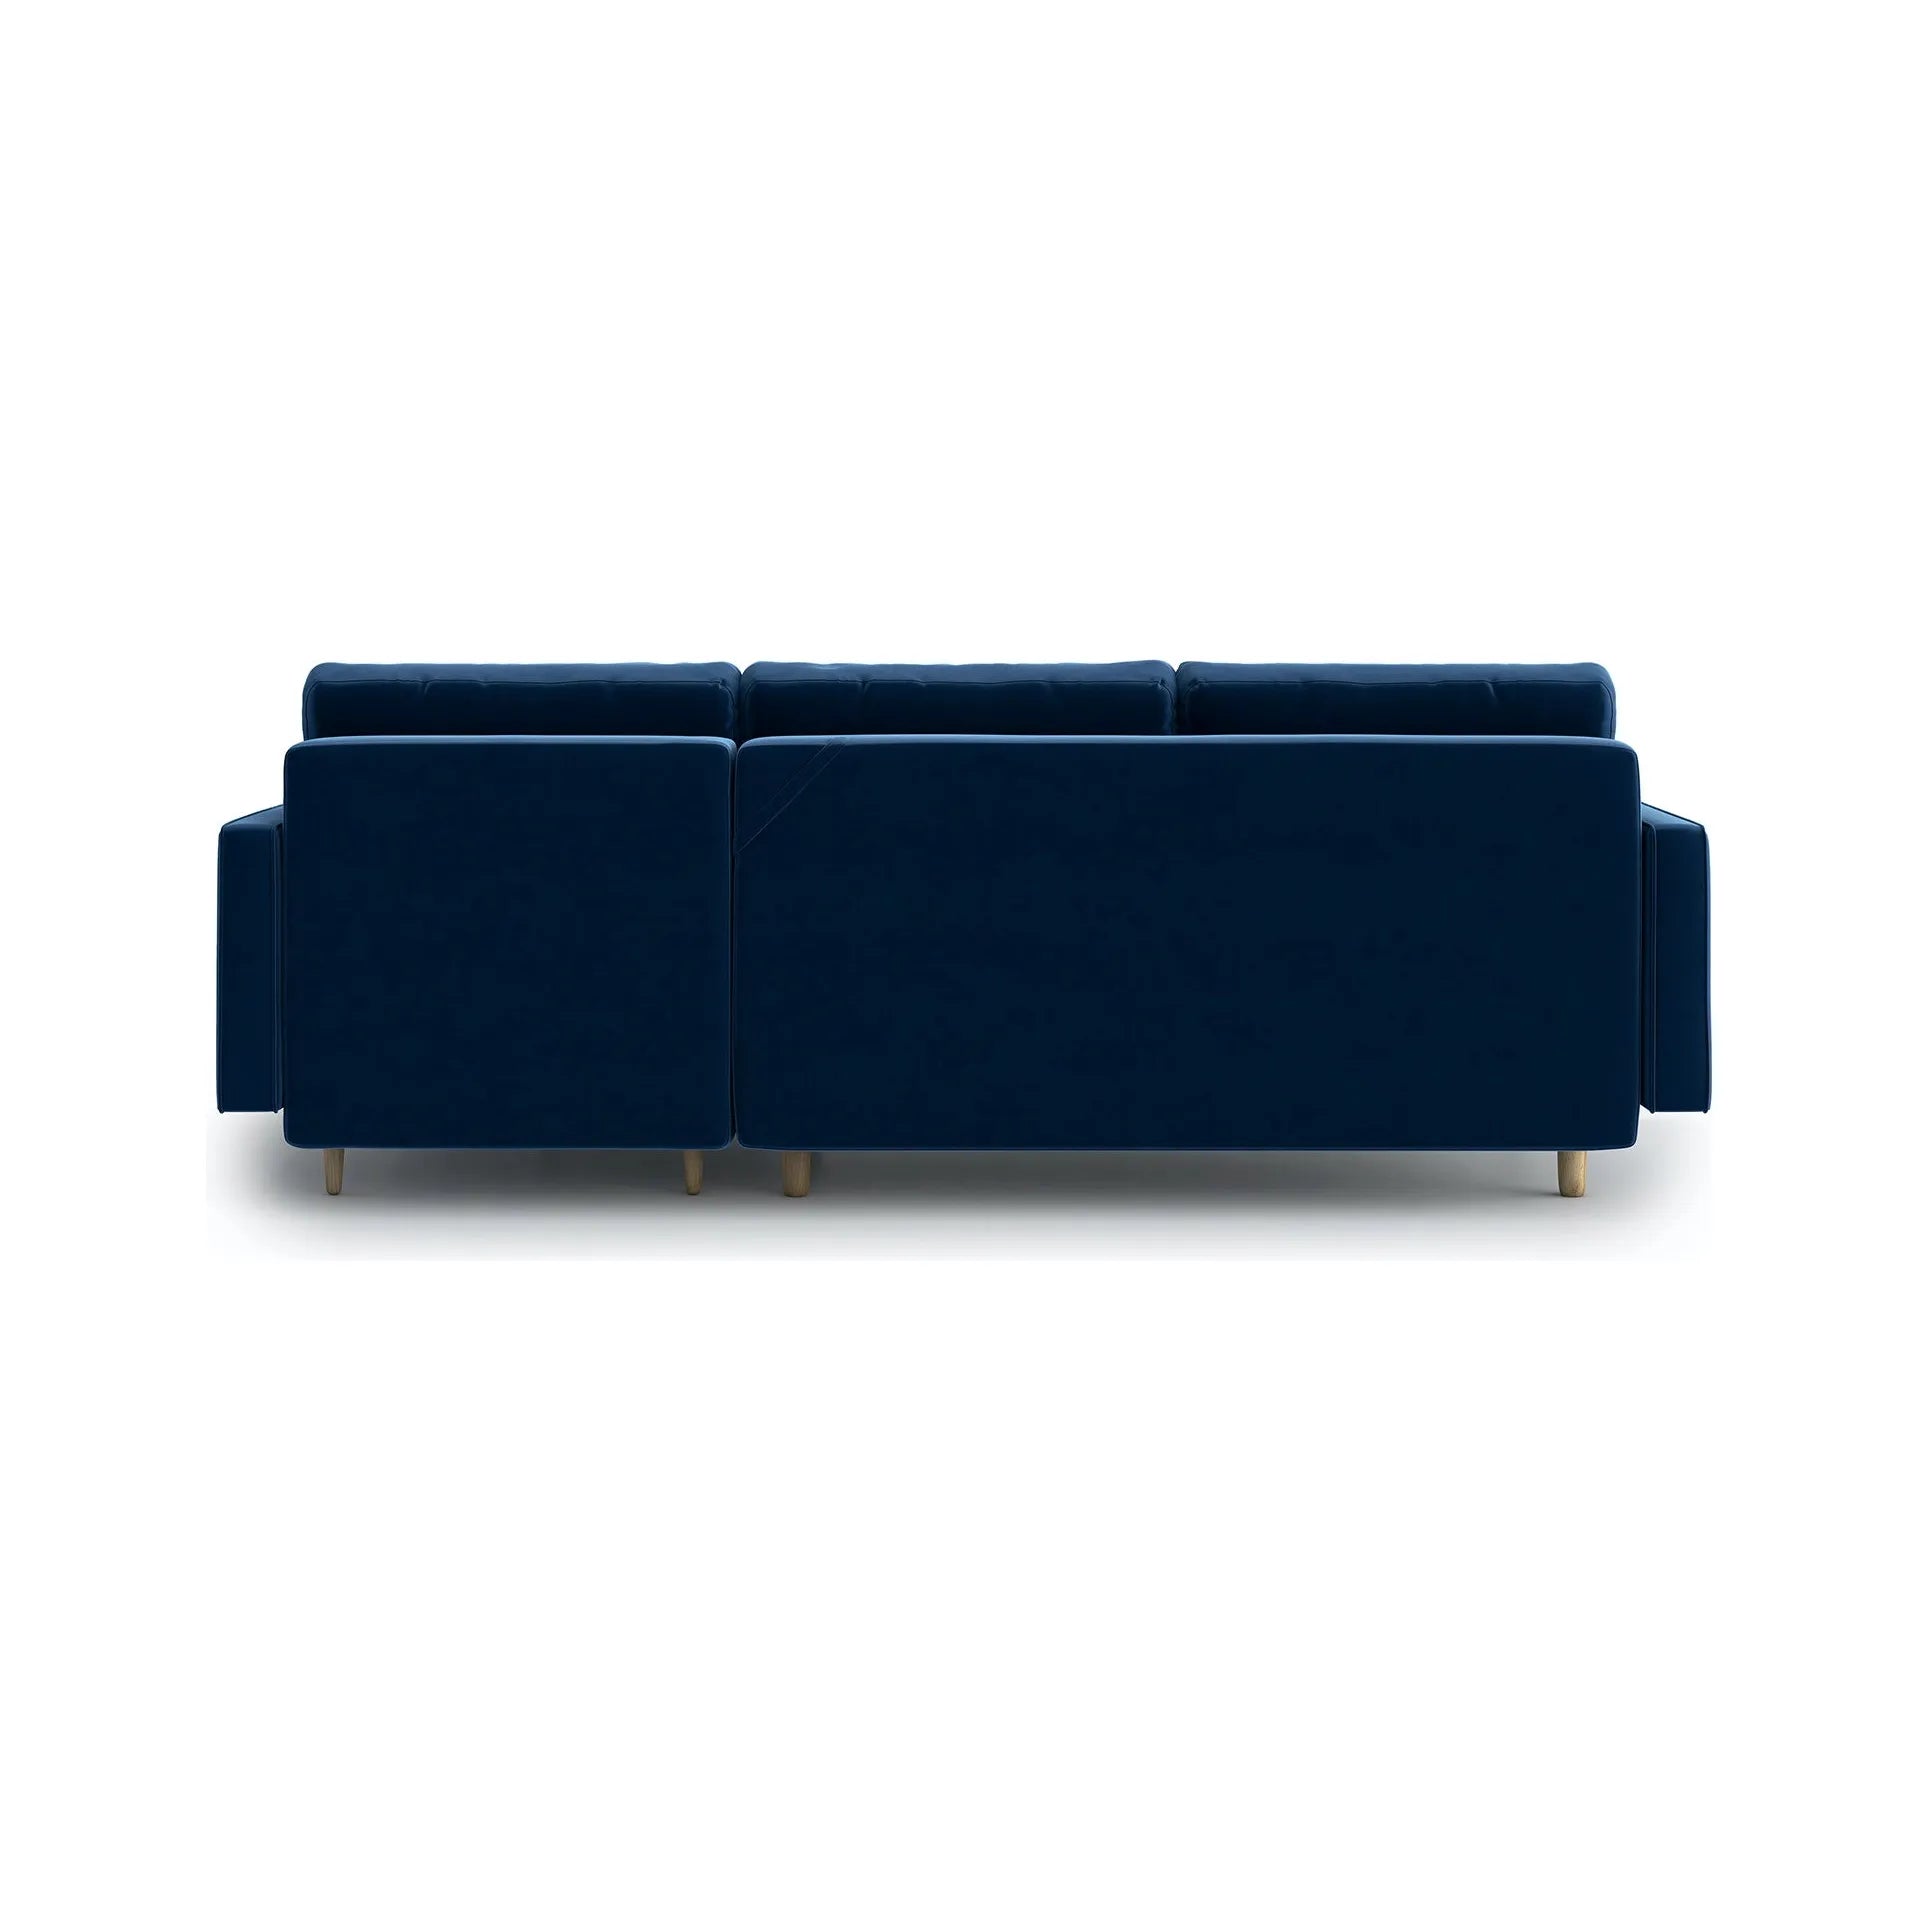 ESME dygsniuota kampinė sofa lova, mėlyna spalva, universali kampinė pusė